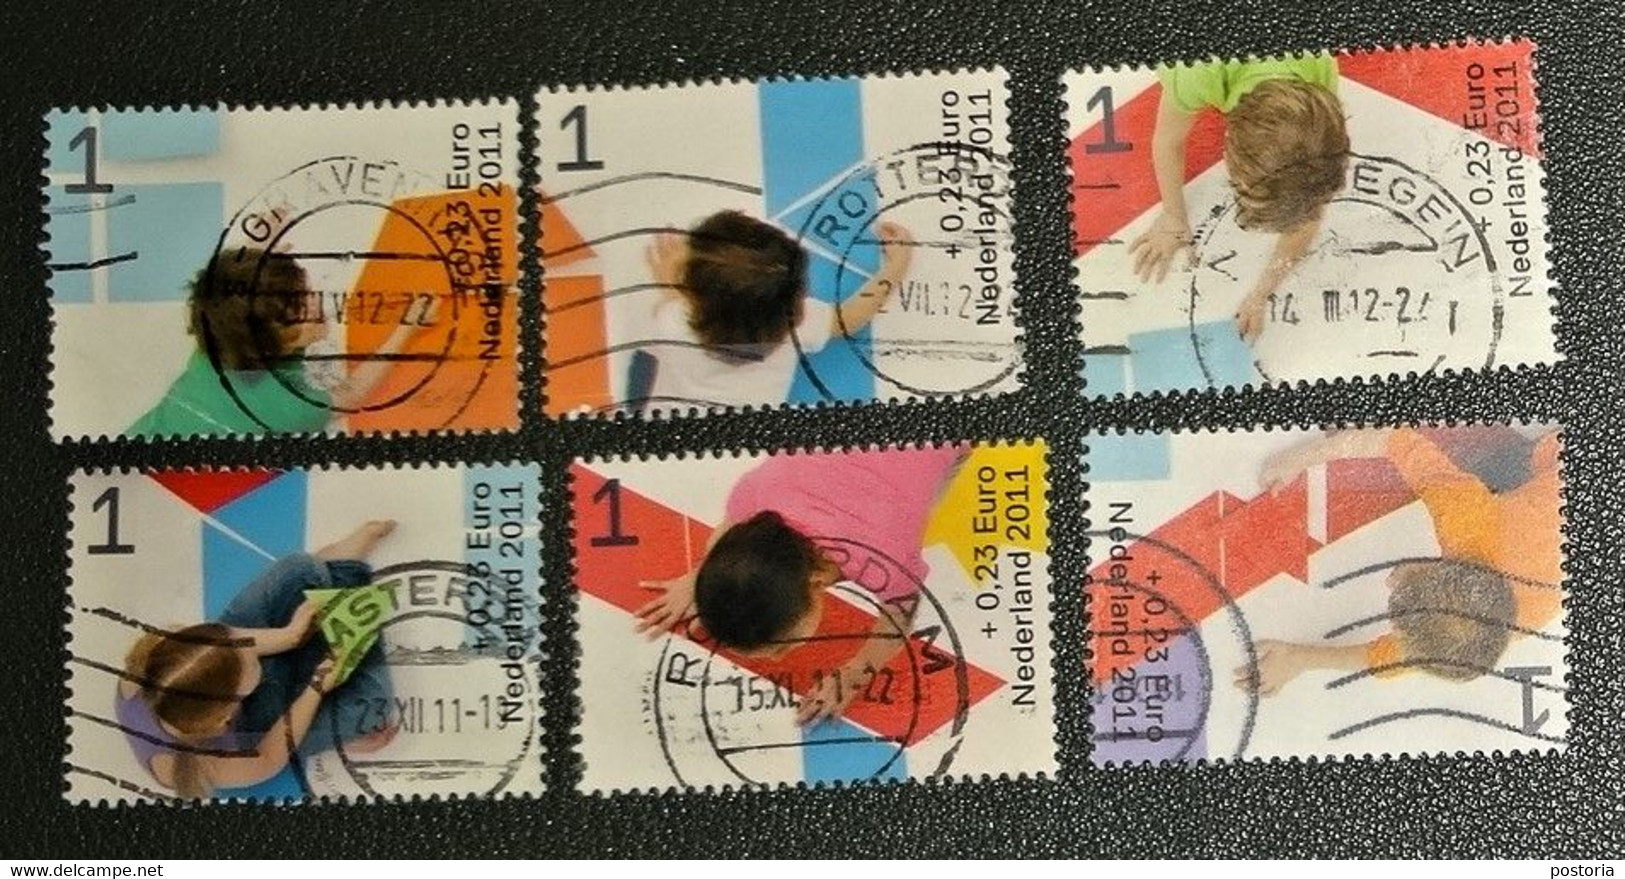 Nederland - NVPH - 2886a T/m2886f  - 2011 - Gebruikt - Cancelled -  Kinderzegels - Complete Serie - Used Stamps